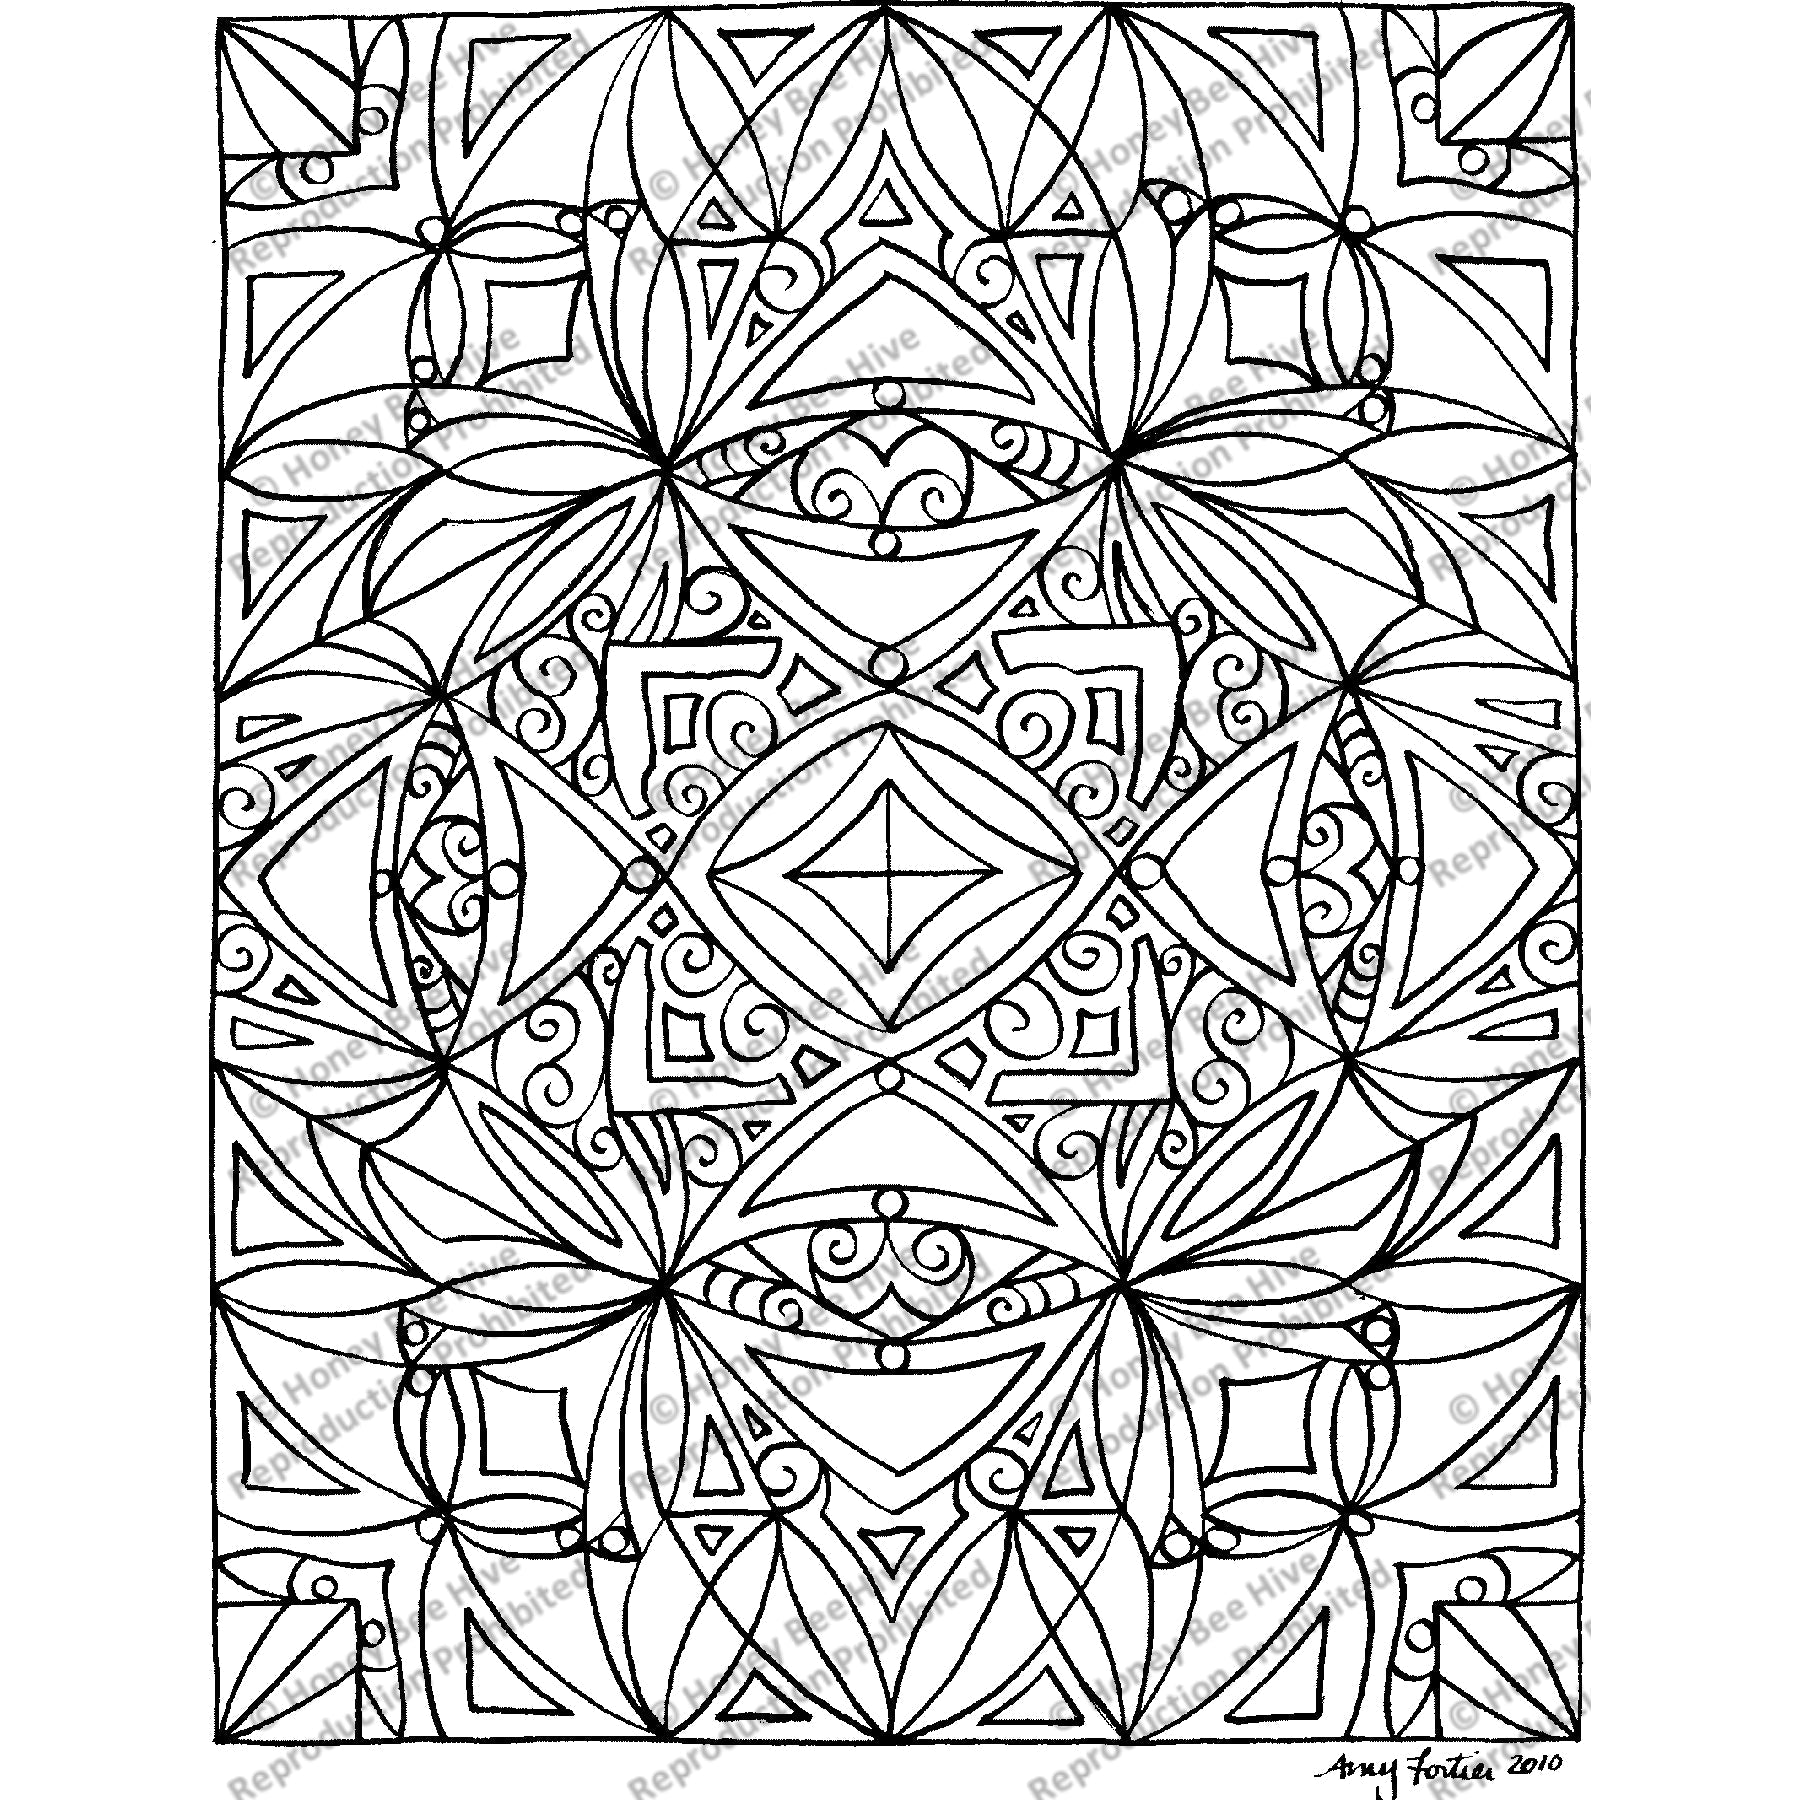 Chiroptera, rug hooking pattern